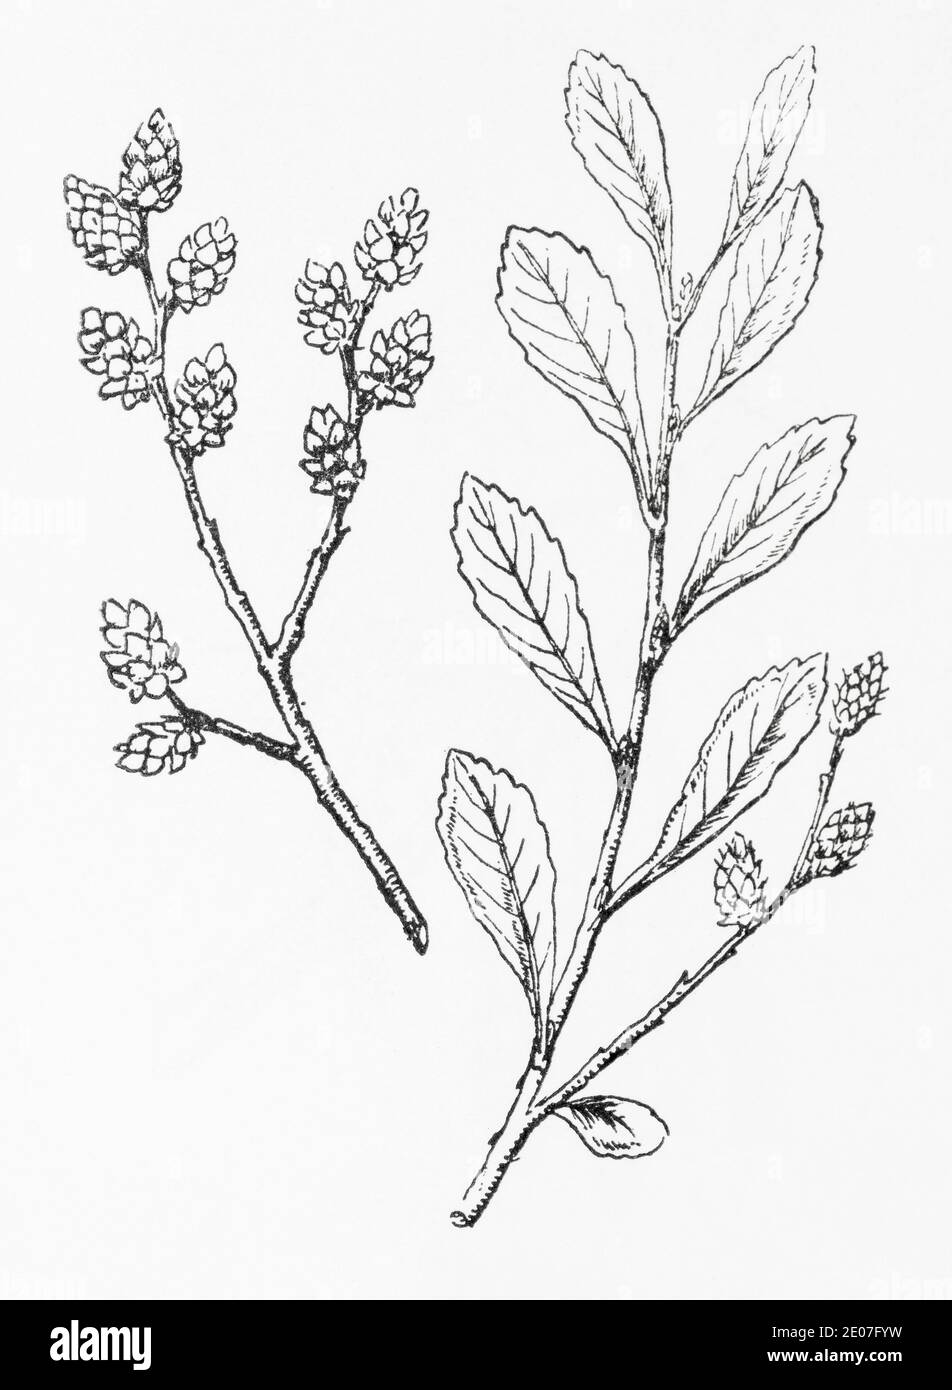 Alte botanische Illustration Gravur von Moor Myrtle, Sweet Gale / Myrica Gale. Traditionelle Heilkräuter Pflanze. Siehe Hinweise Stockfoto